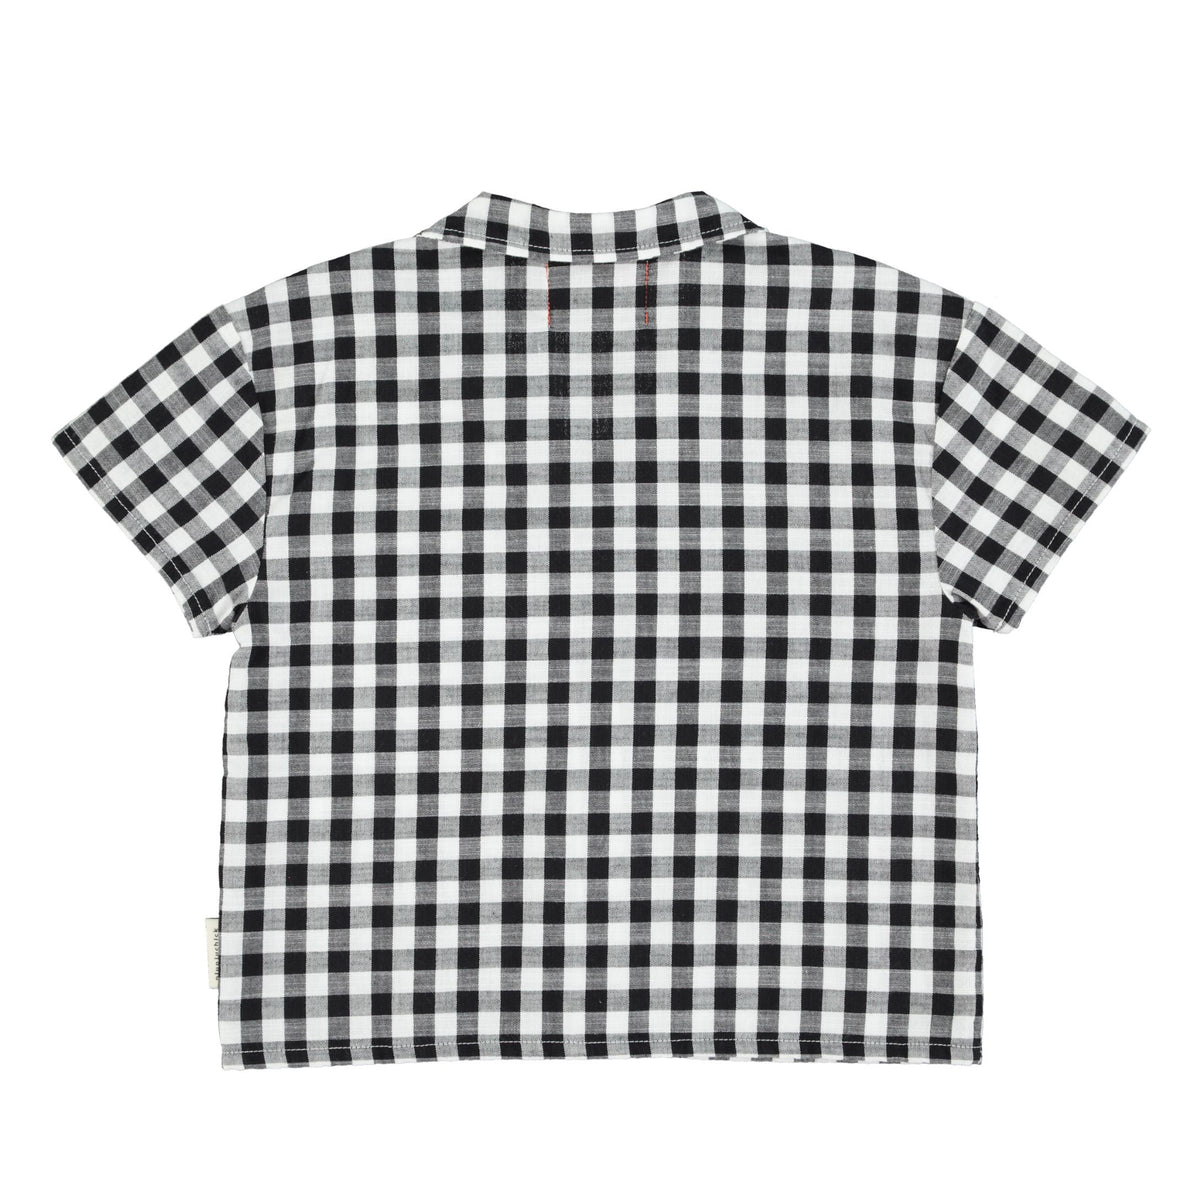 piupiuchick hawaiian shirt - black and white checkered